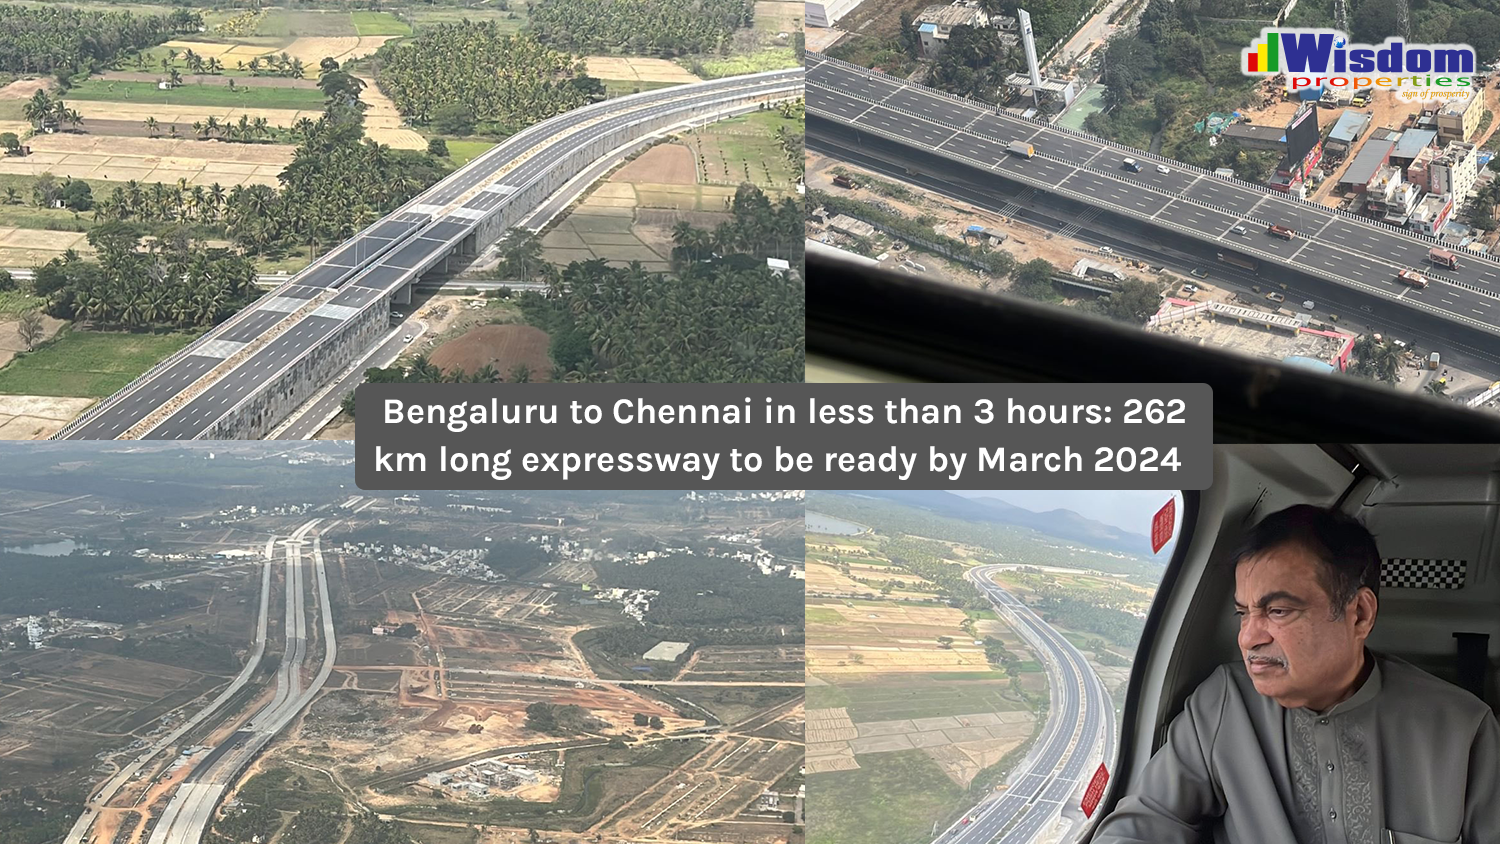 Bengaluru-Chennai Expressway 8 way-lane (262 km) will be finished By March 2024